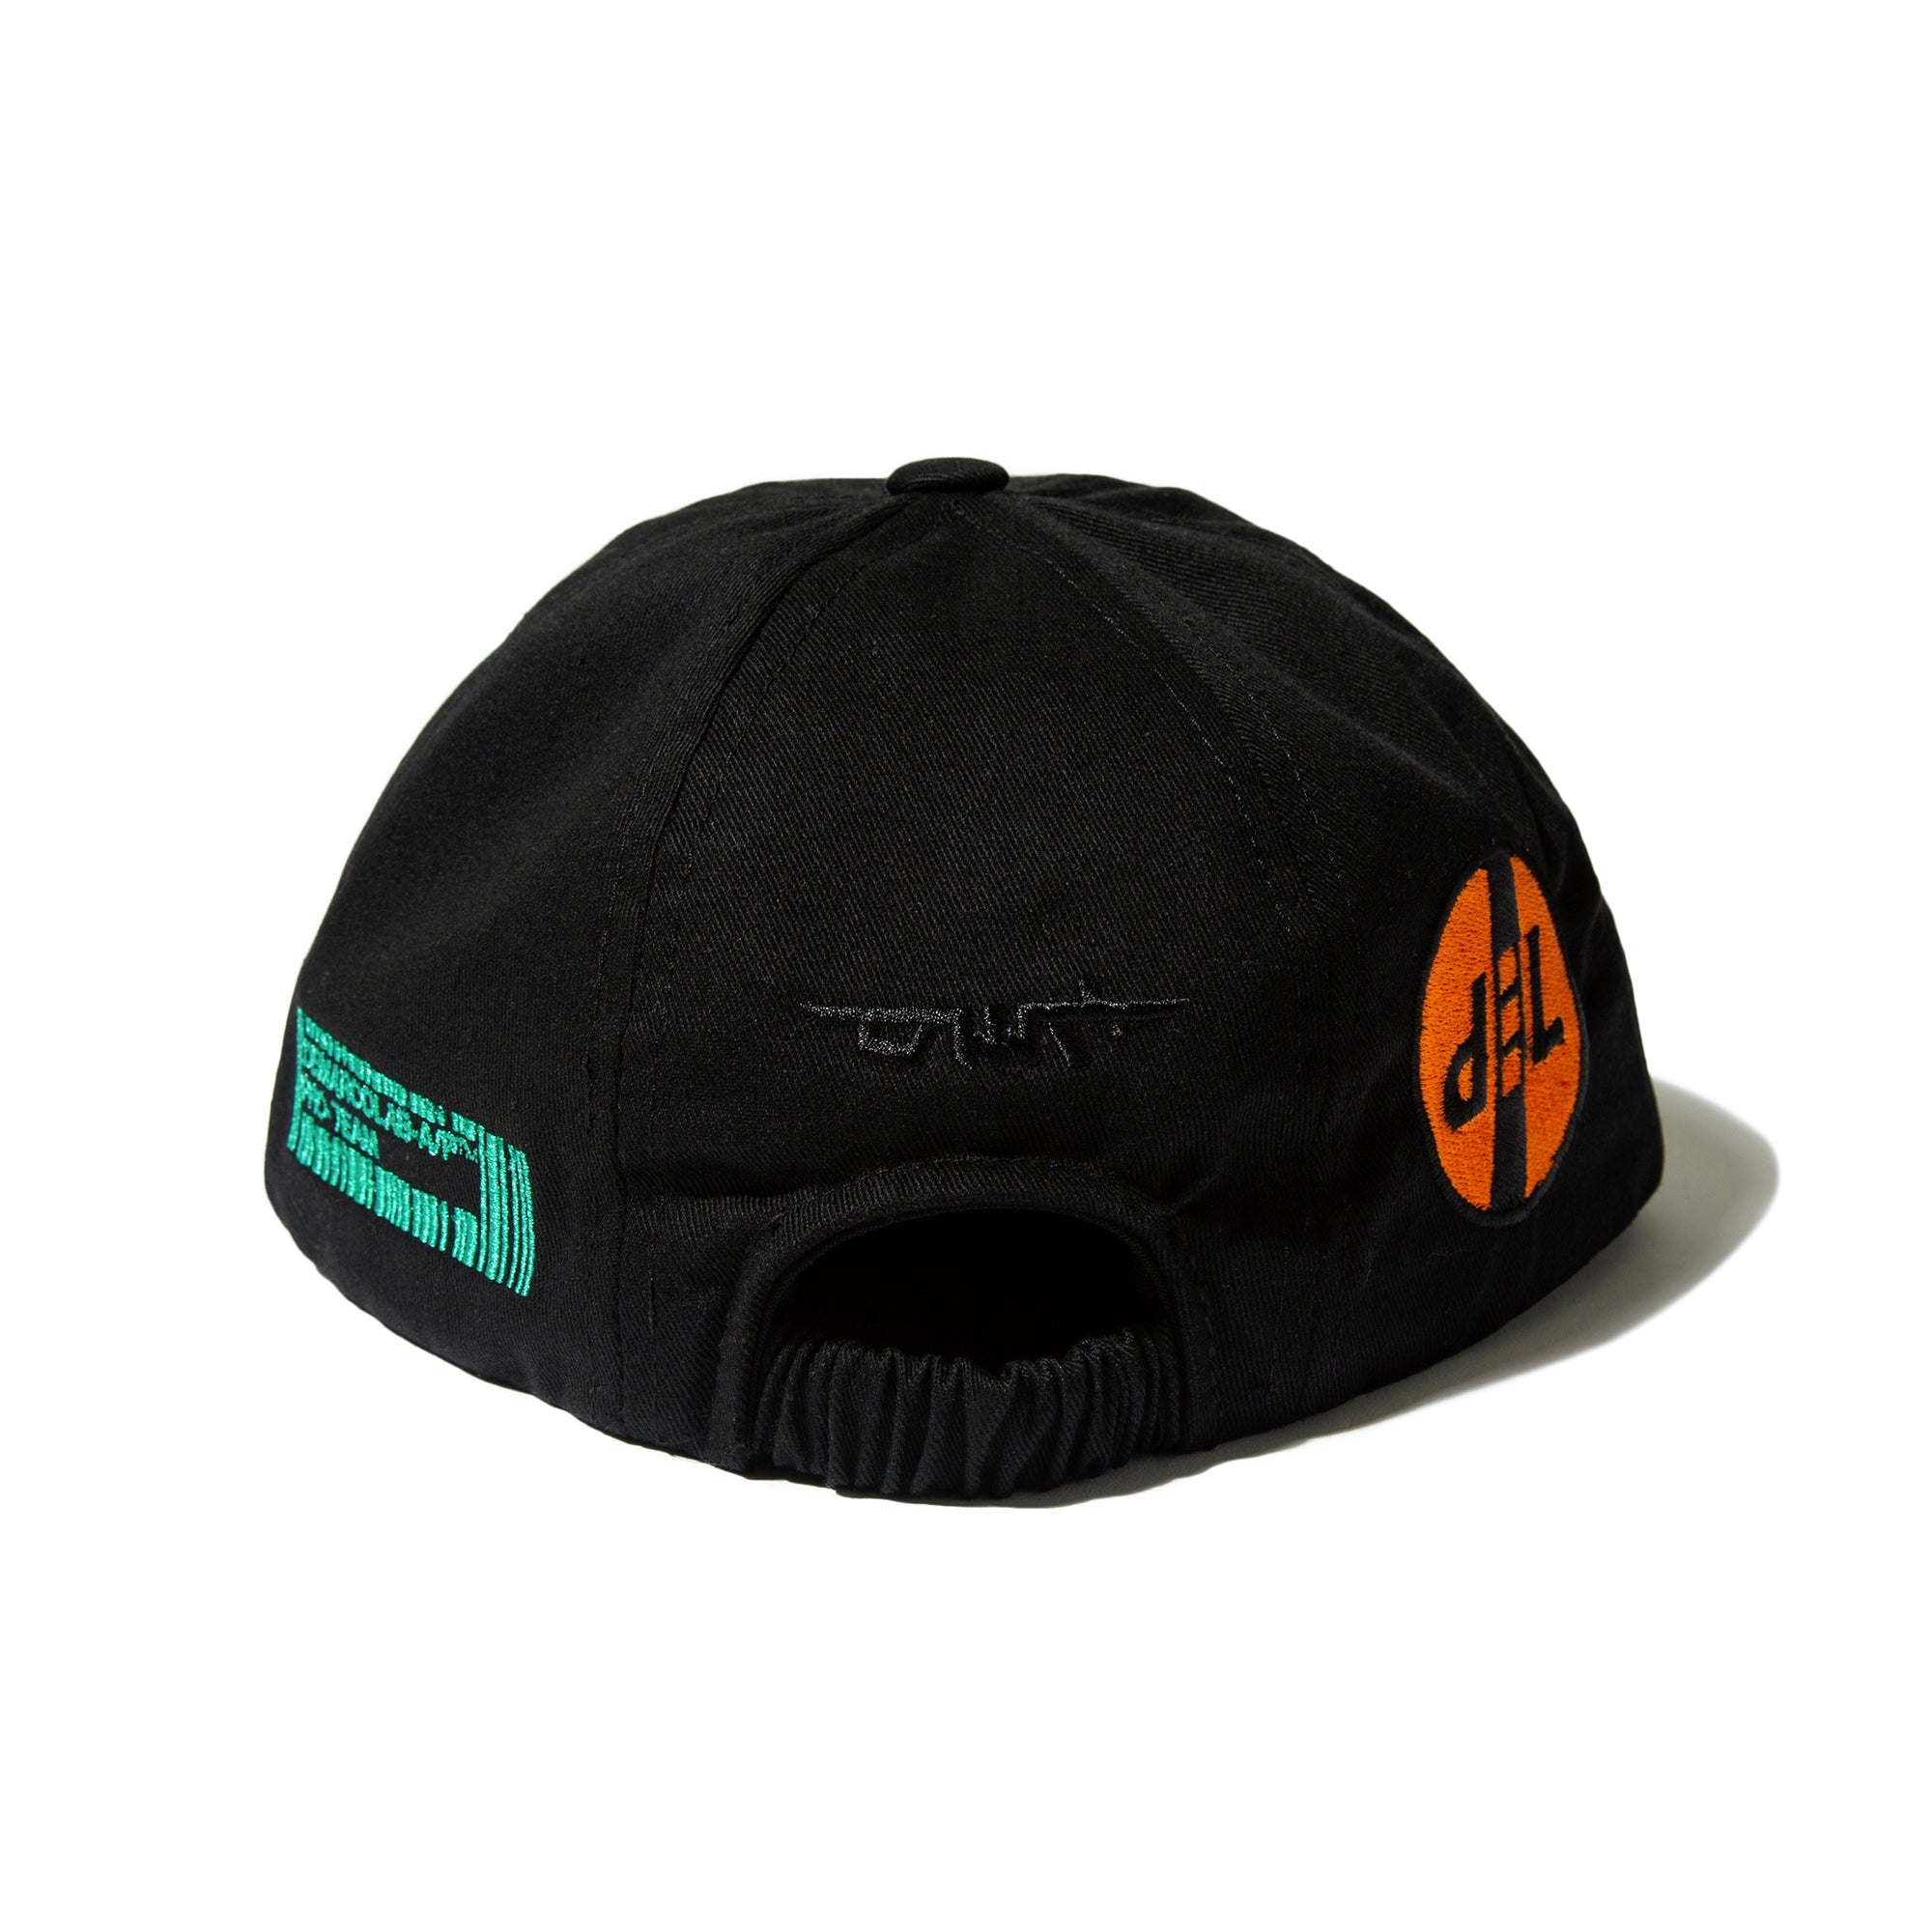 DML-A/P 6 PANEL CAP (Black)